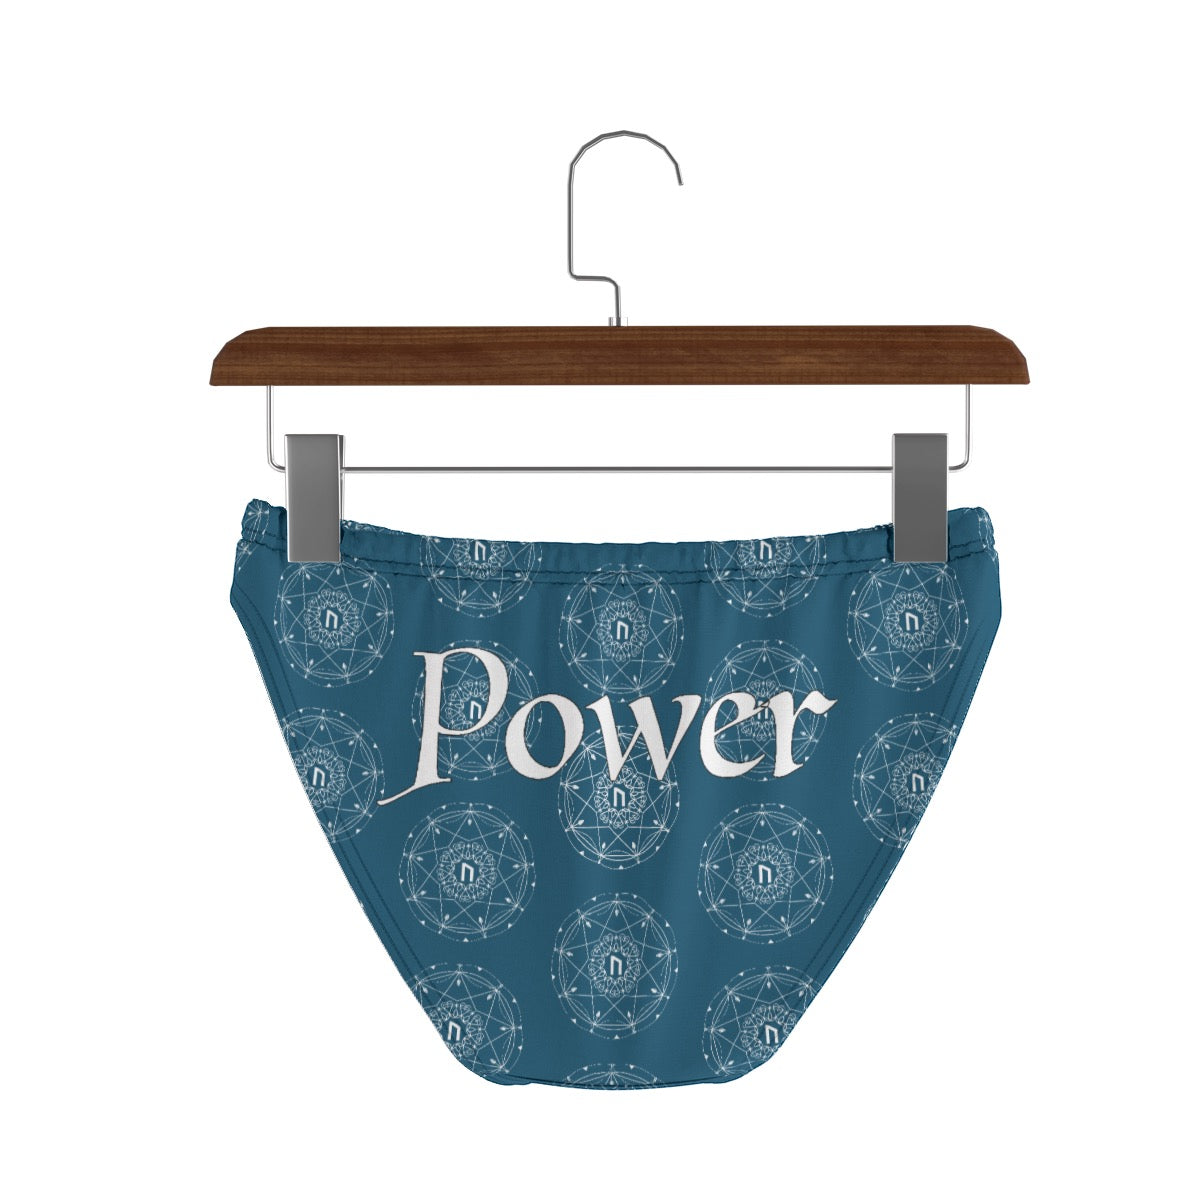 Patti's Power Panties Women's Low-Rise Bikini Briefs- "Power"